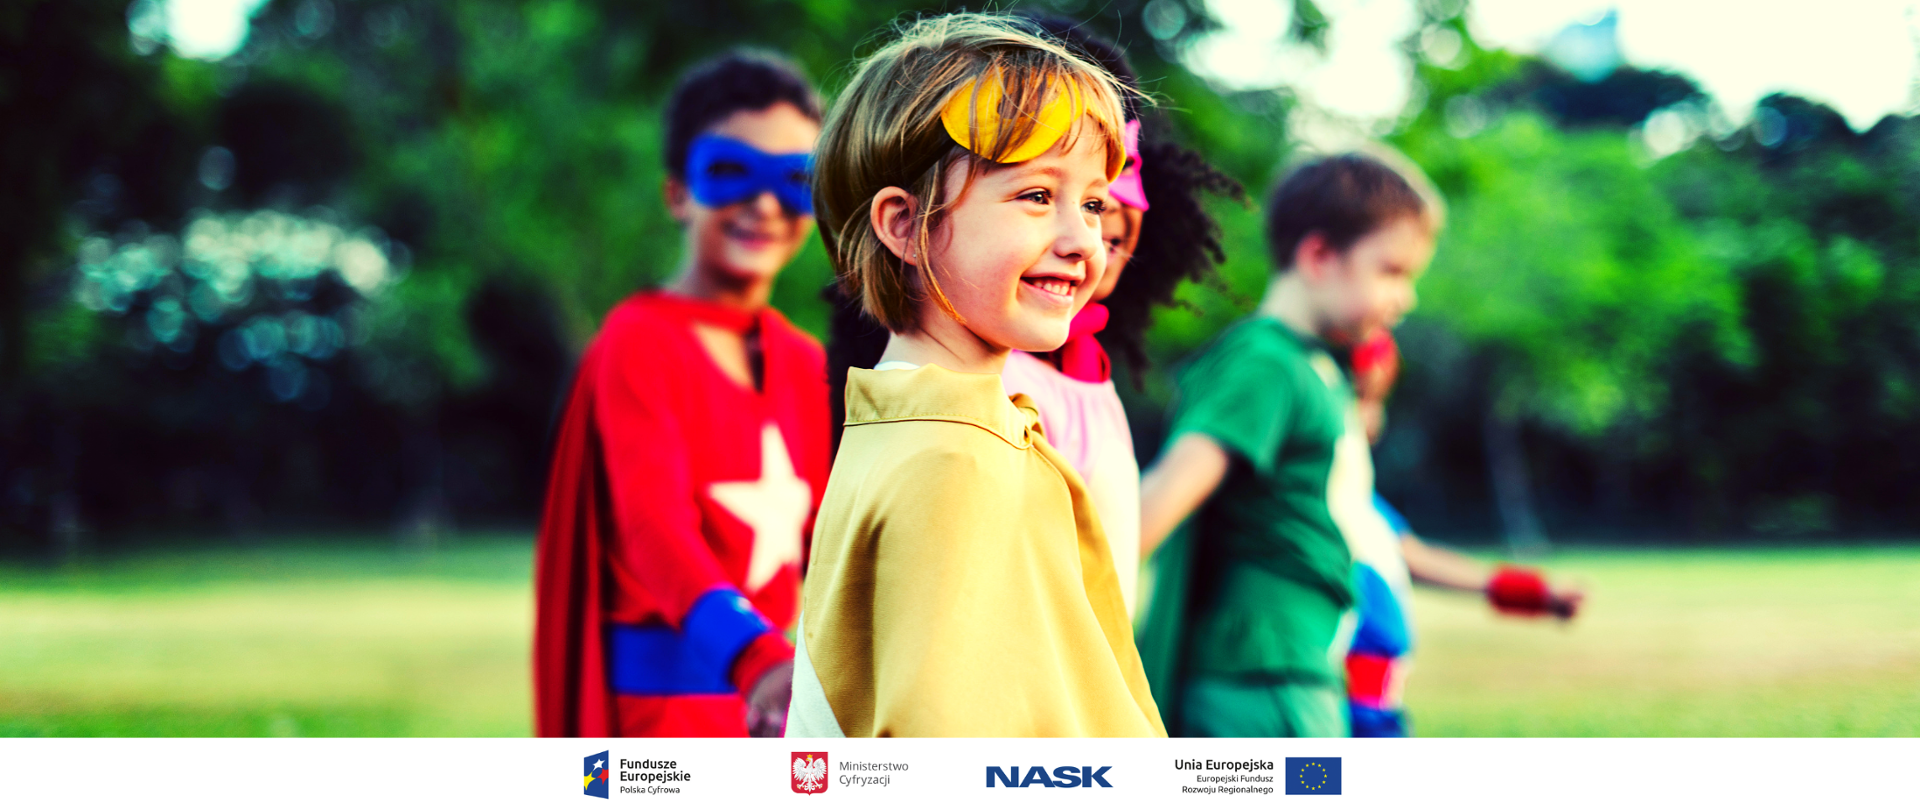 Na zdjęciu widać grupę uśmiechniętych dzieci w strojach superbohaterów, przebywających w otoczeniu drzew. U dołu znajduje się pasek logotypów: Europejskie Fundusze Polska Cyfrowa, Ministerstwo Cyfryzacji, NASK i Unia Europejska Europejski Fundusz Rozwoju Regionalnego.